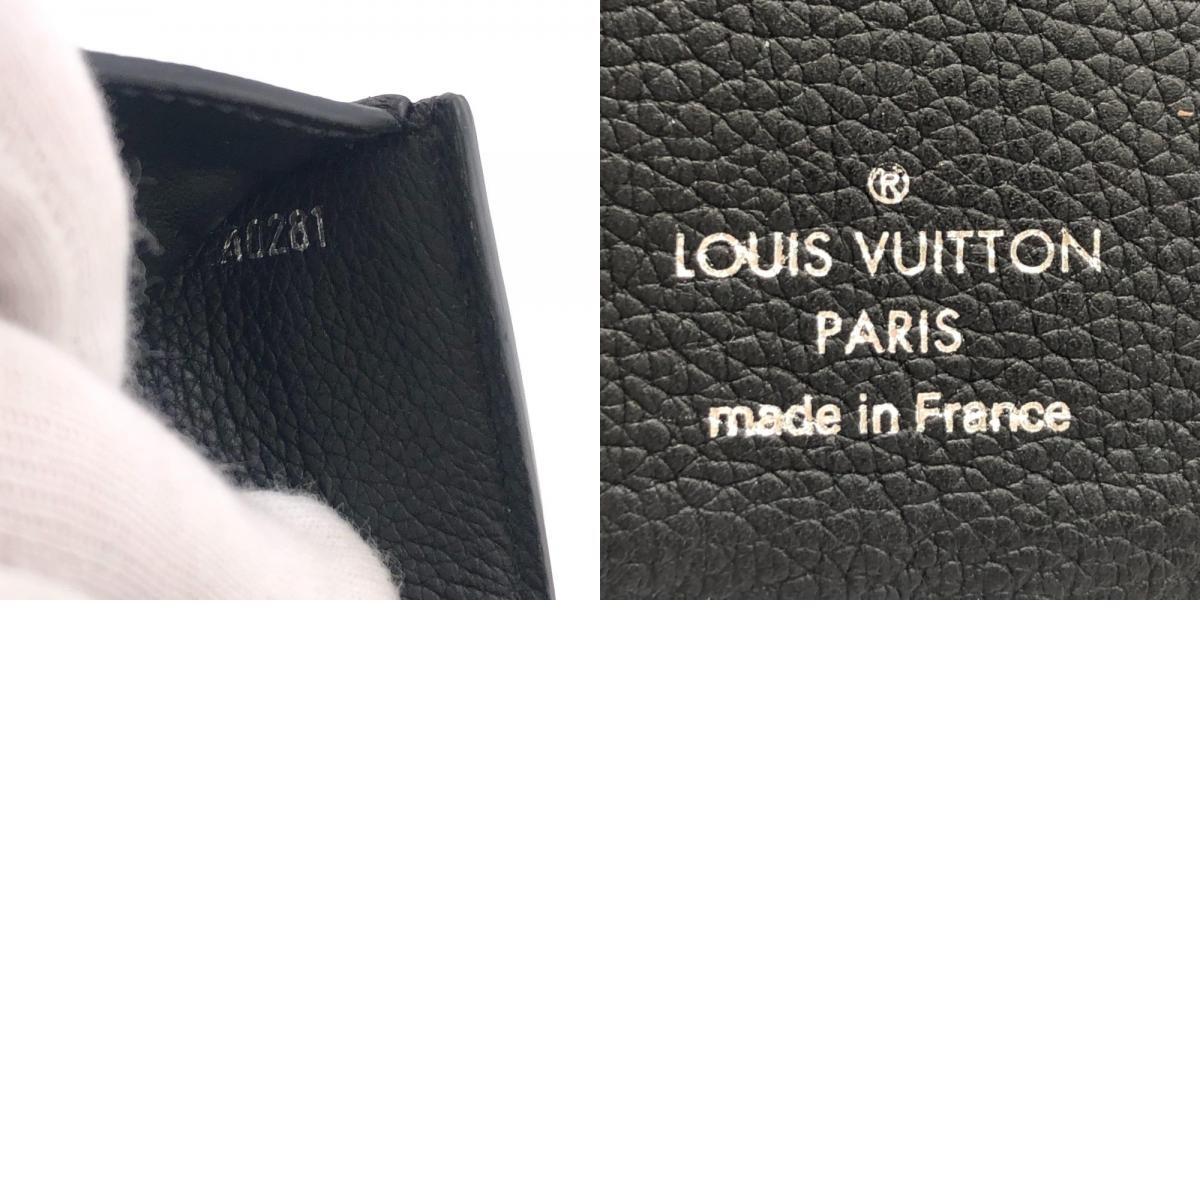 LOUIS VUITTON/ルイヴィトン ビトン M62947 ポルトフォイユマイロックミー トリヨン レザー 三つ折り財布 ブラック ユニセックス ブランド